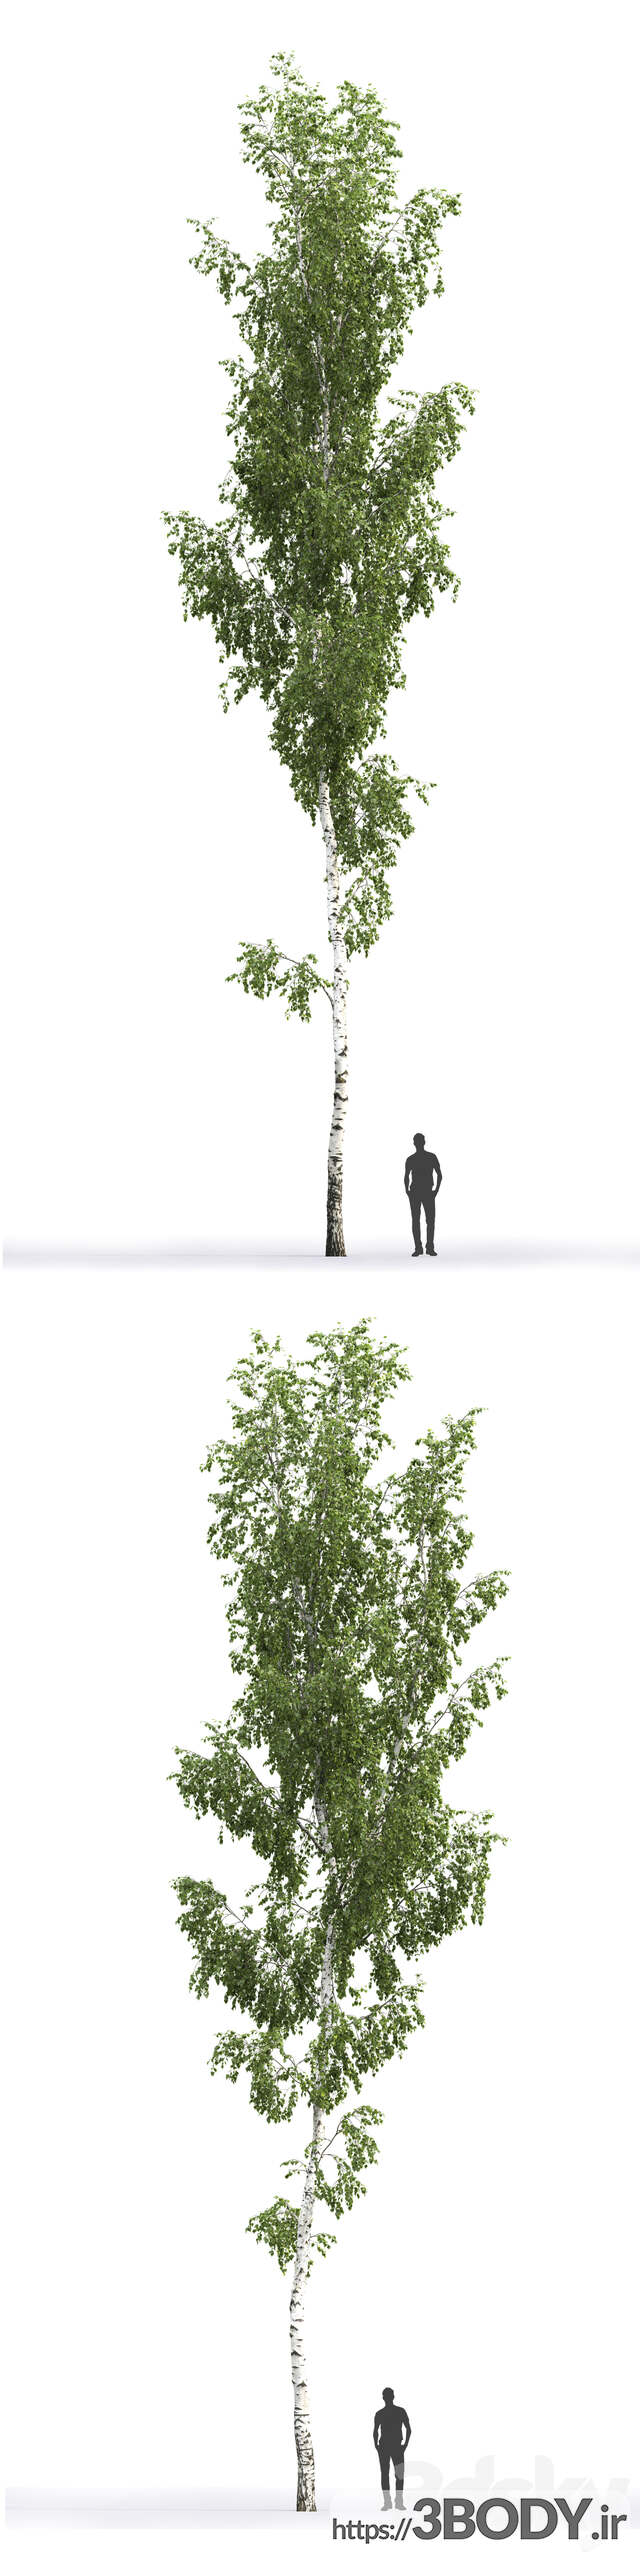 مدل سه بعدی درخت توس عکس 2